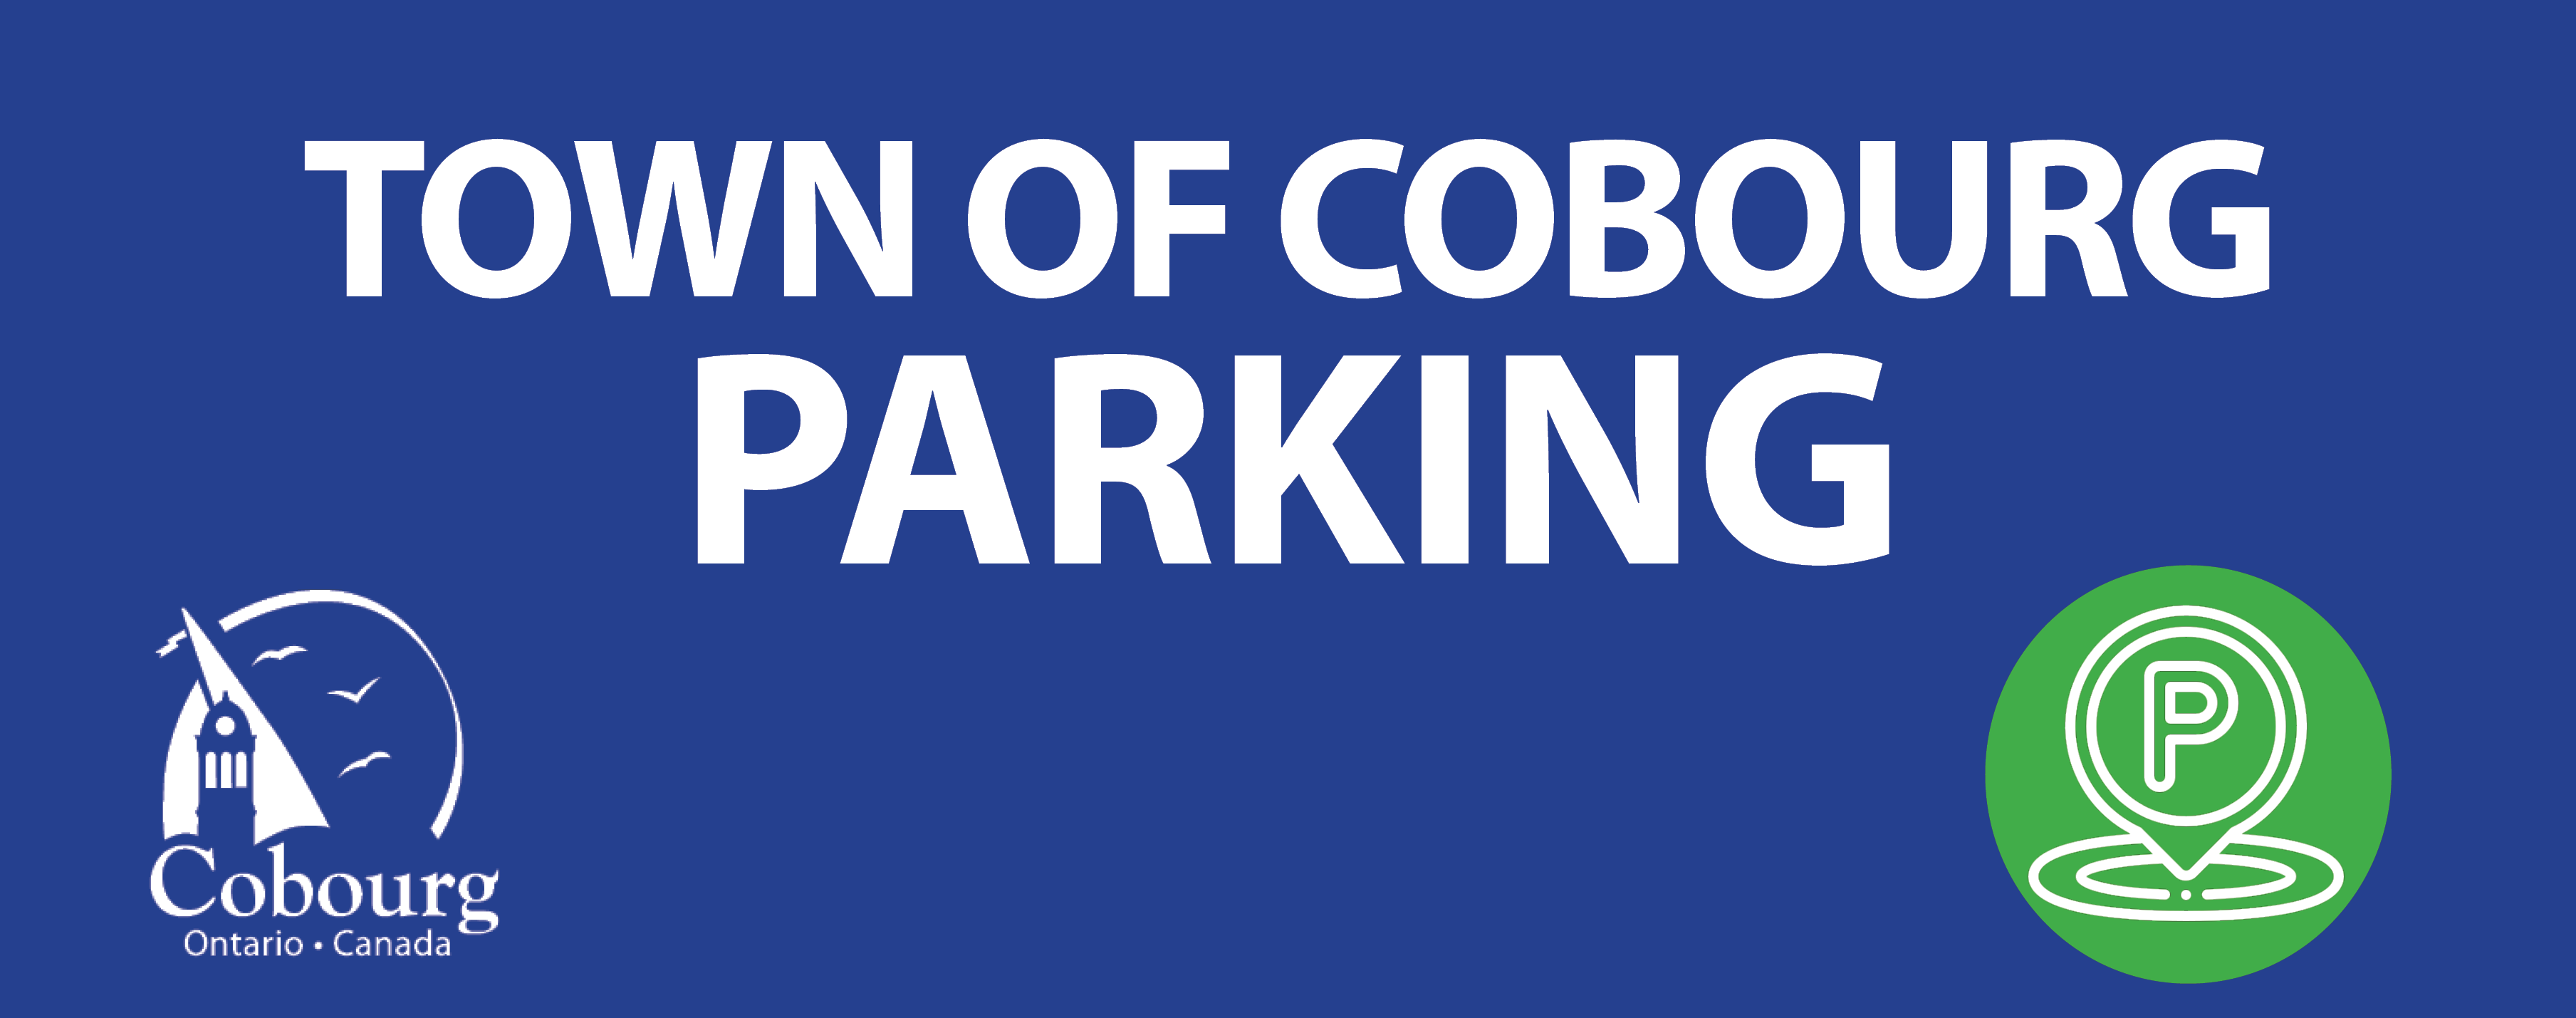 Cobourg Parking banner image